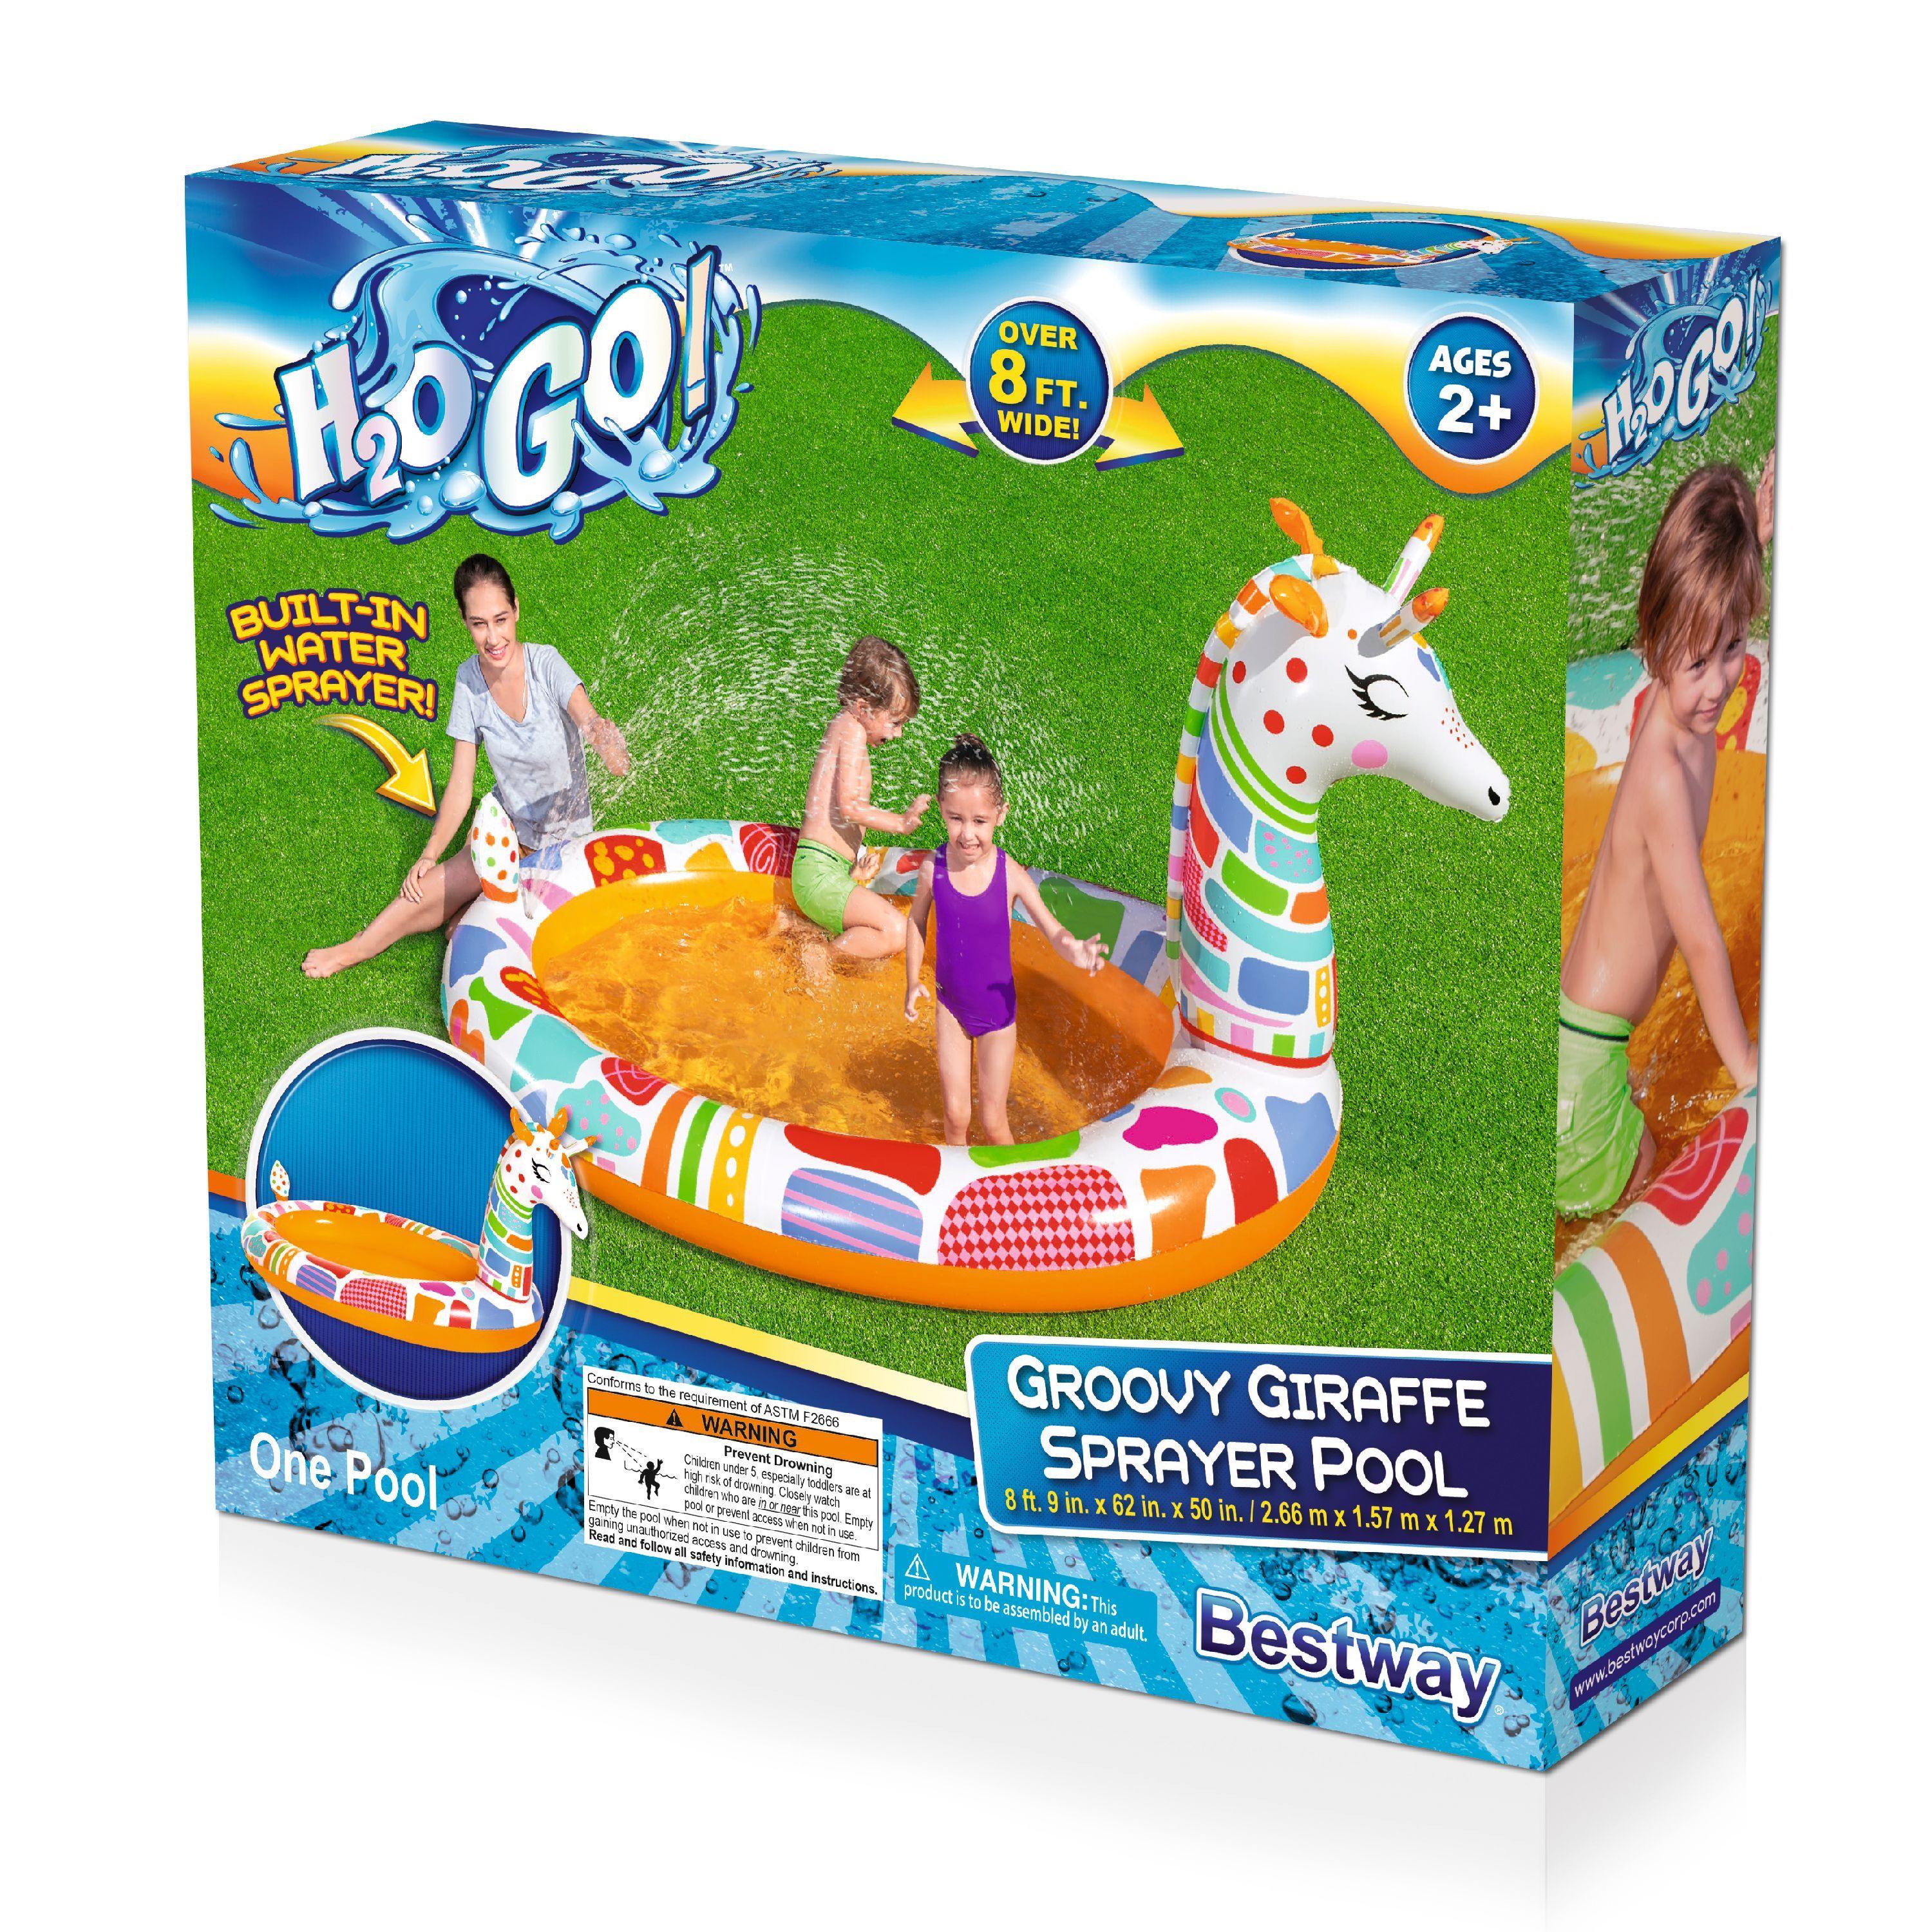 Bestway H2OGO 8'9" x 62" x 50" Groovy Giraffe Sprayer Pool